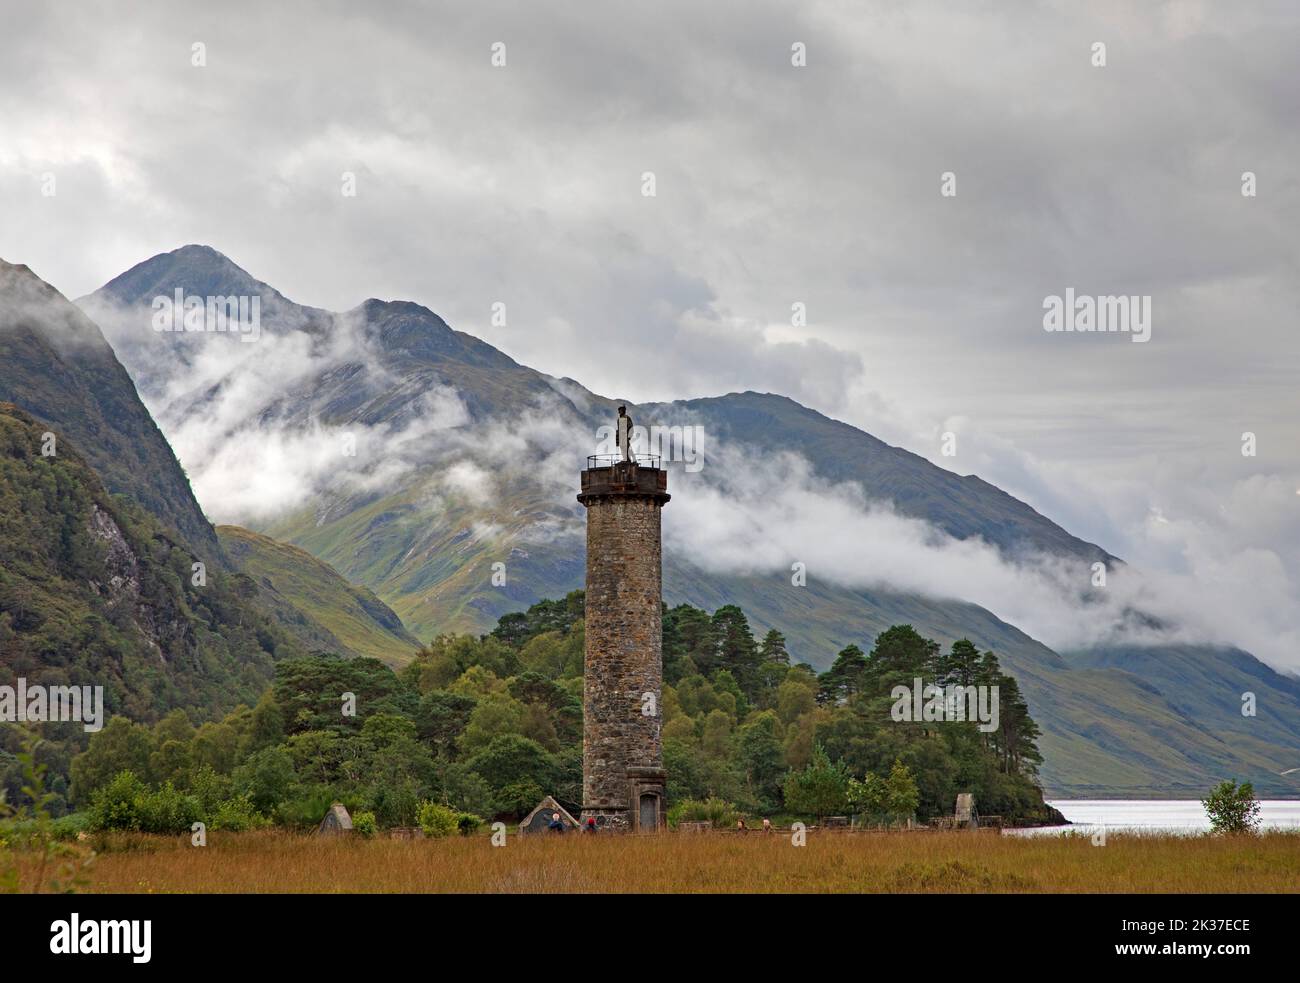 Monumento a Glenifinnan, con niebla en las montañas detrás, Lochaber, Scottish Highlands, Escocia, Reino Unido Foto de stock